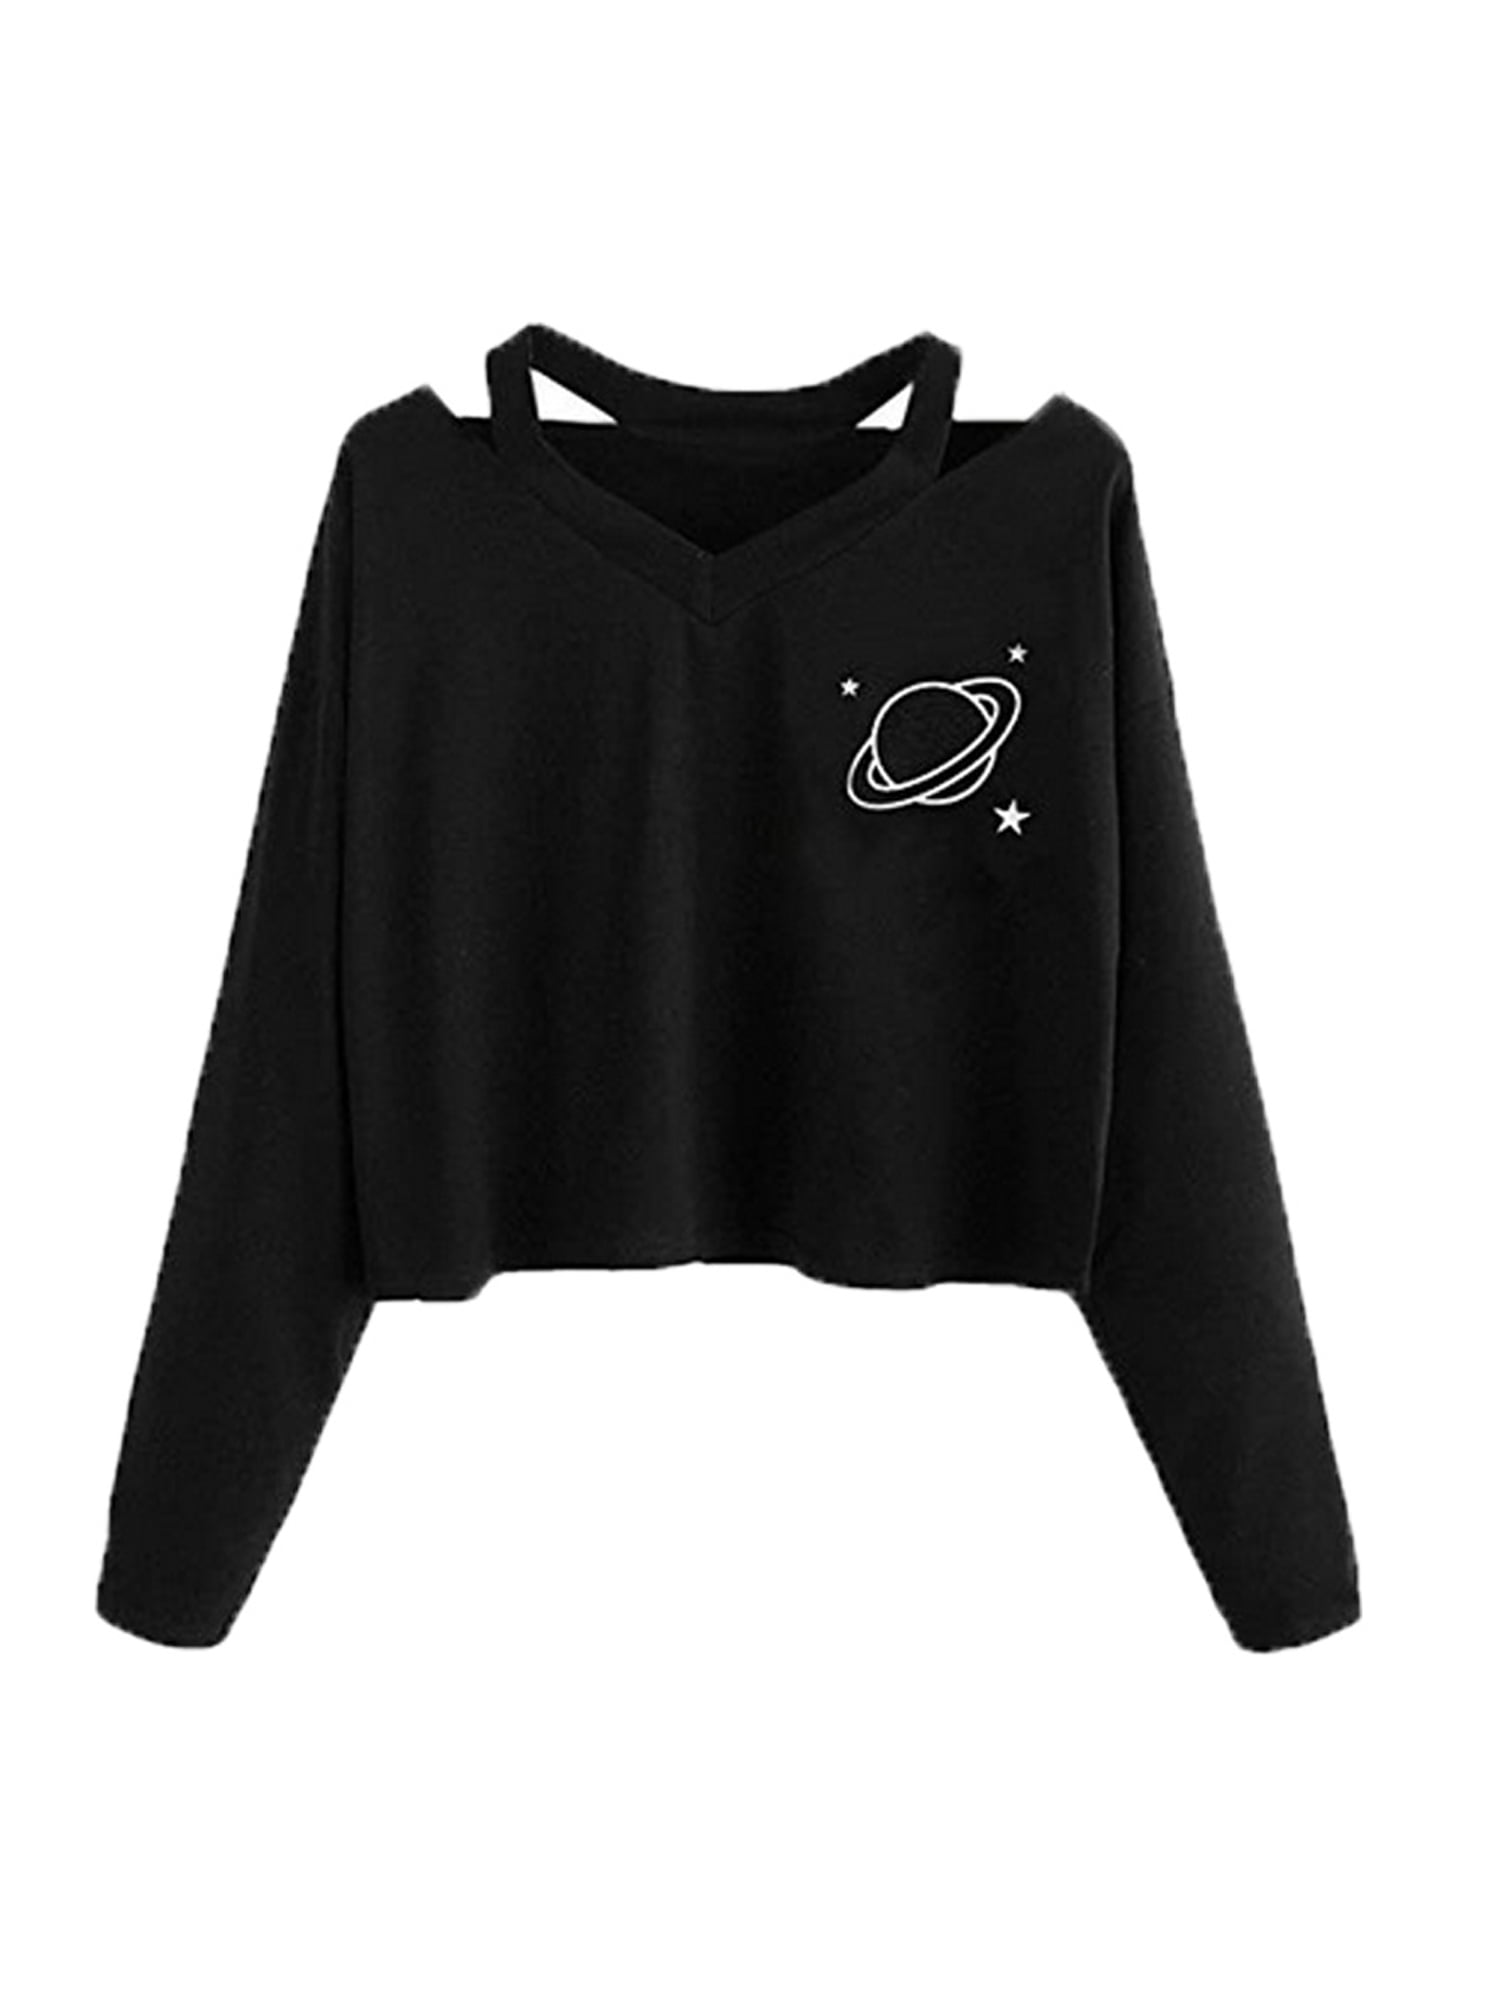 Weant Women Planet Crop Hoodies Star Print Pullover Hoodie Sweatshirt Sweater Jumper Sale Teen Girls Hooded